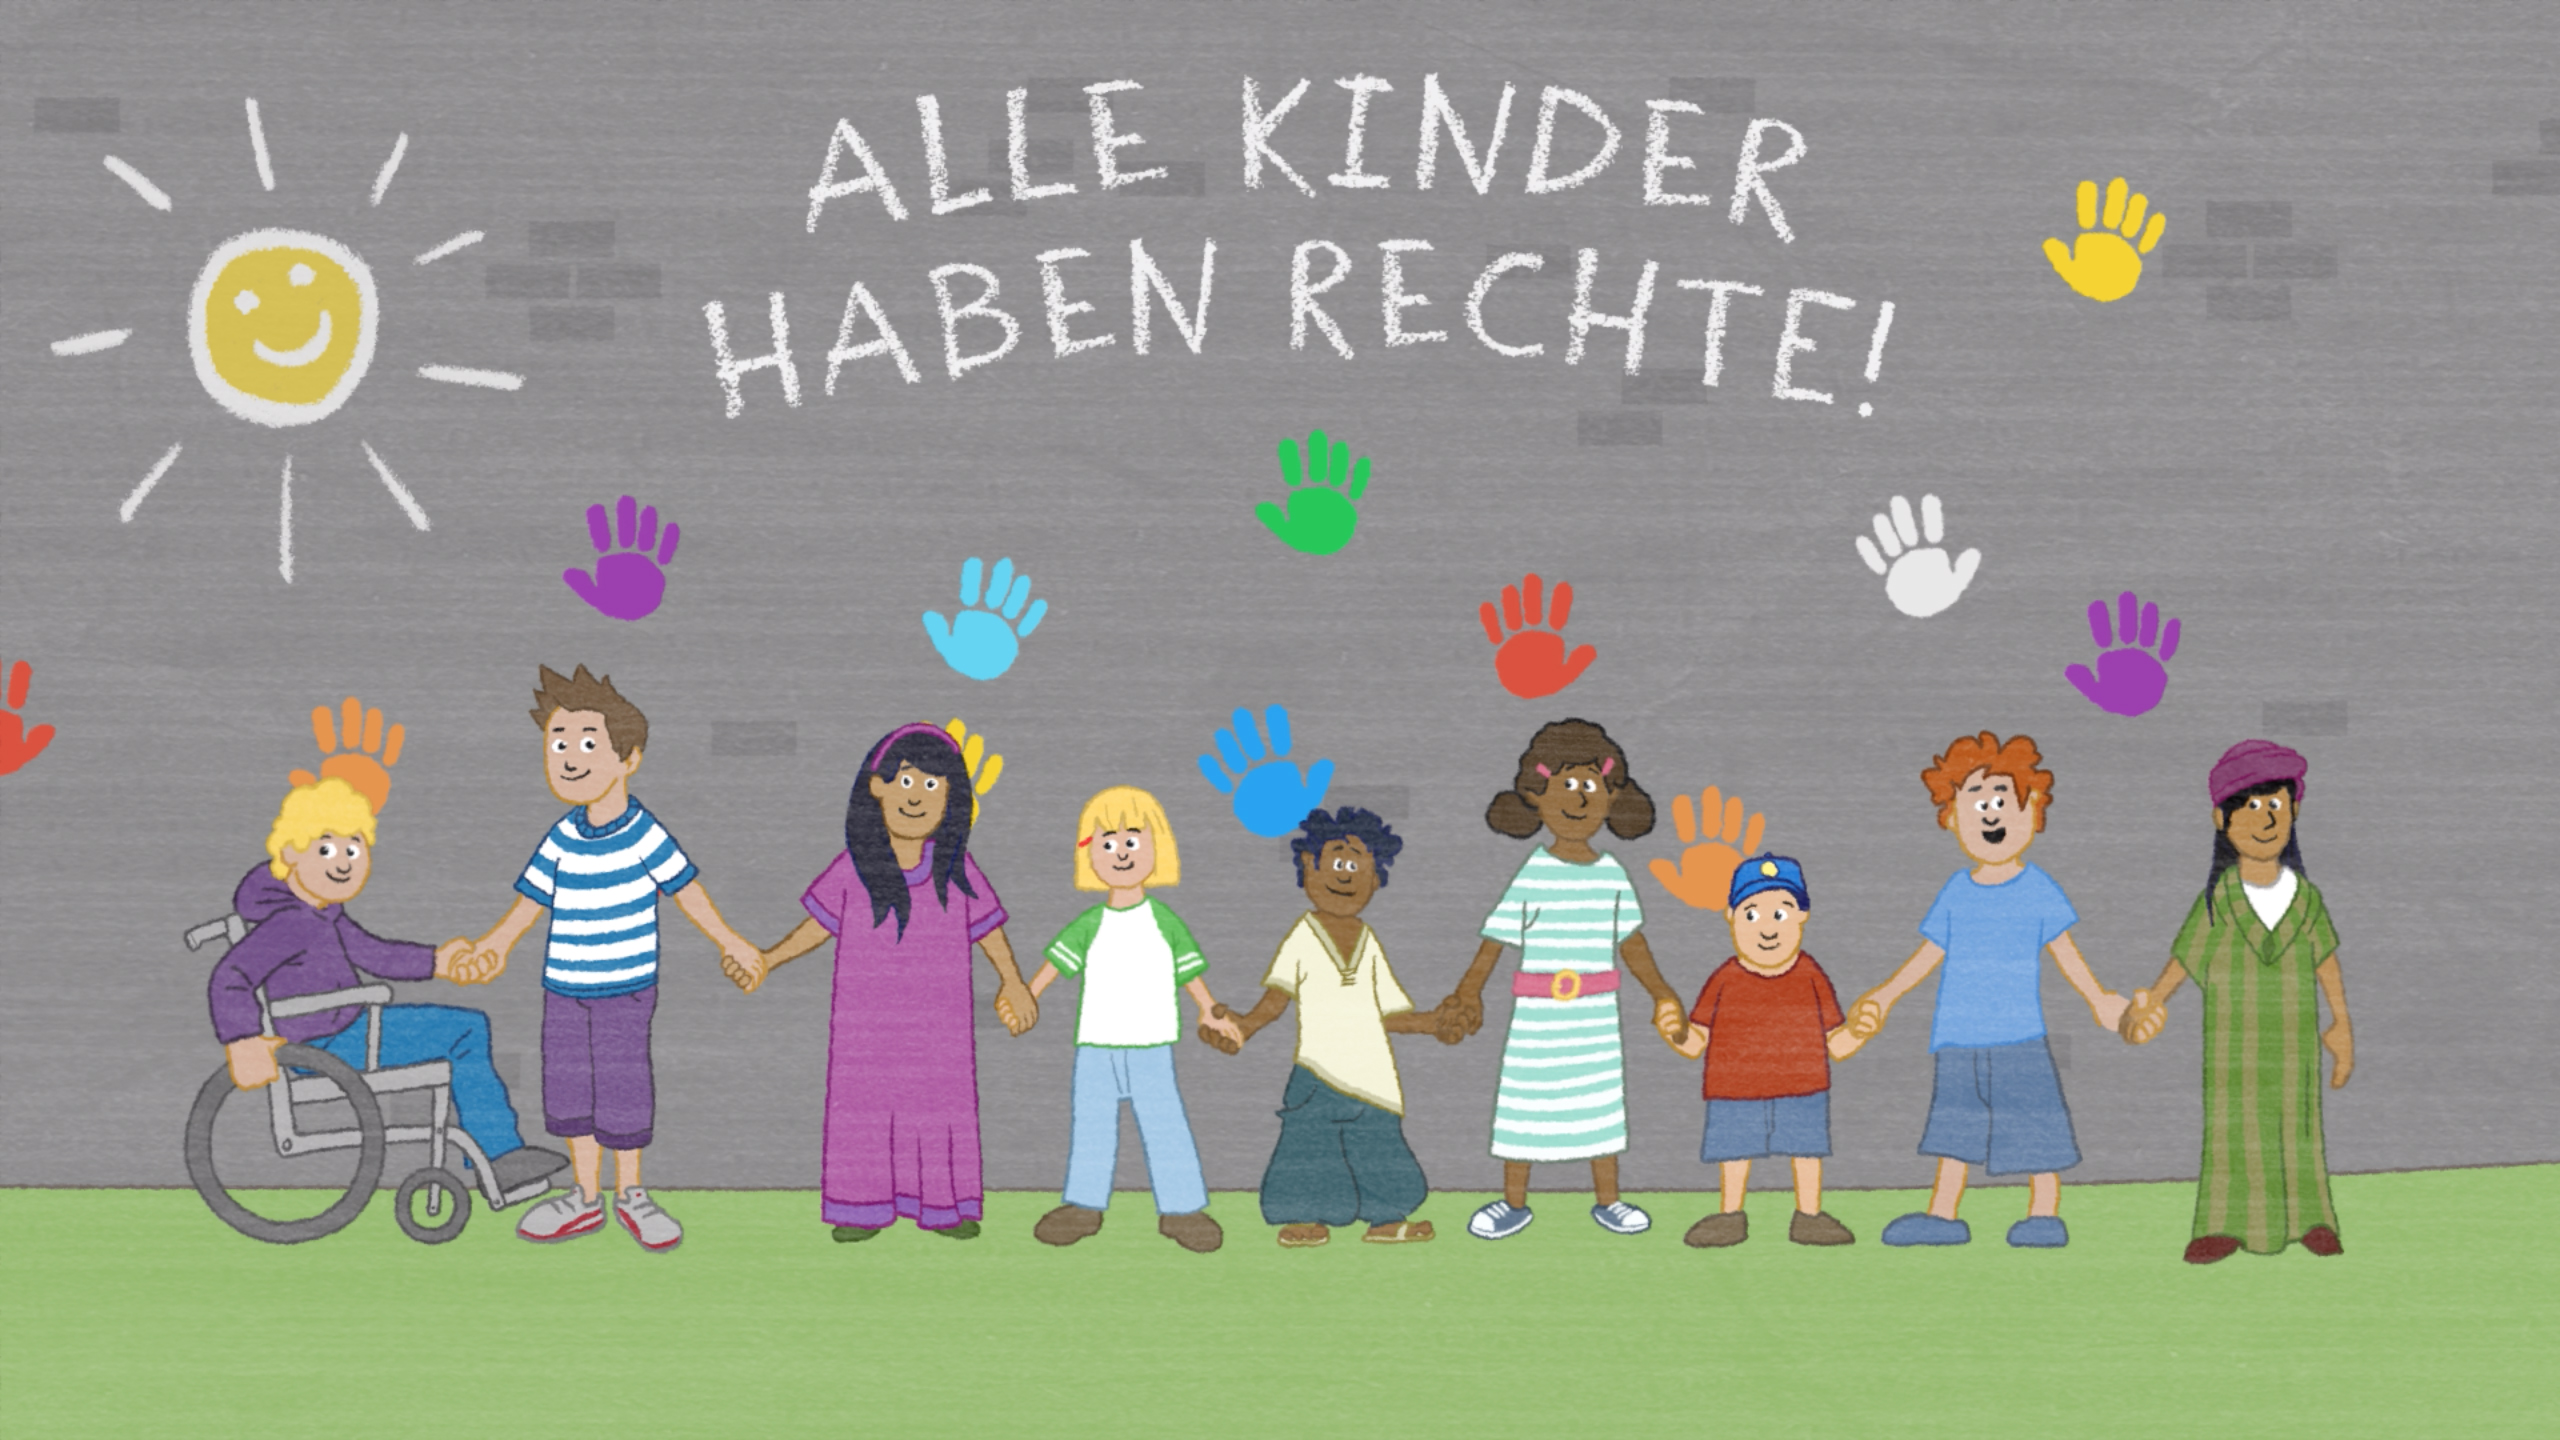 Kinder sind. Die Rechte der kinder :: галерея. Die Rechte der kinder (1997- ) Германия. Die Rechte der kinder Вики. Das kind группа.